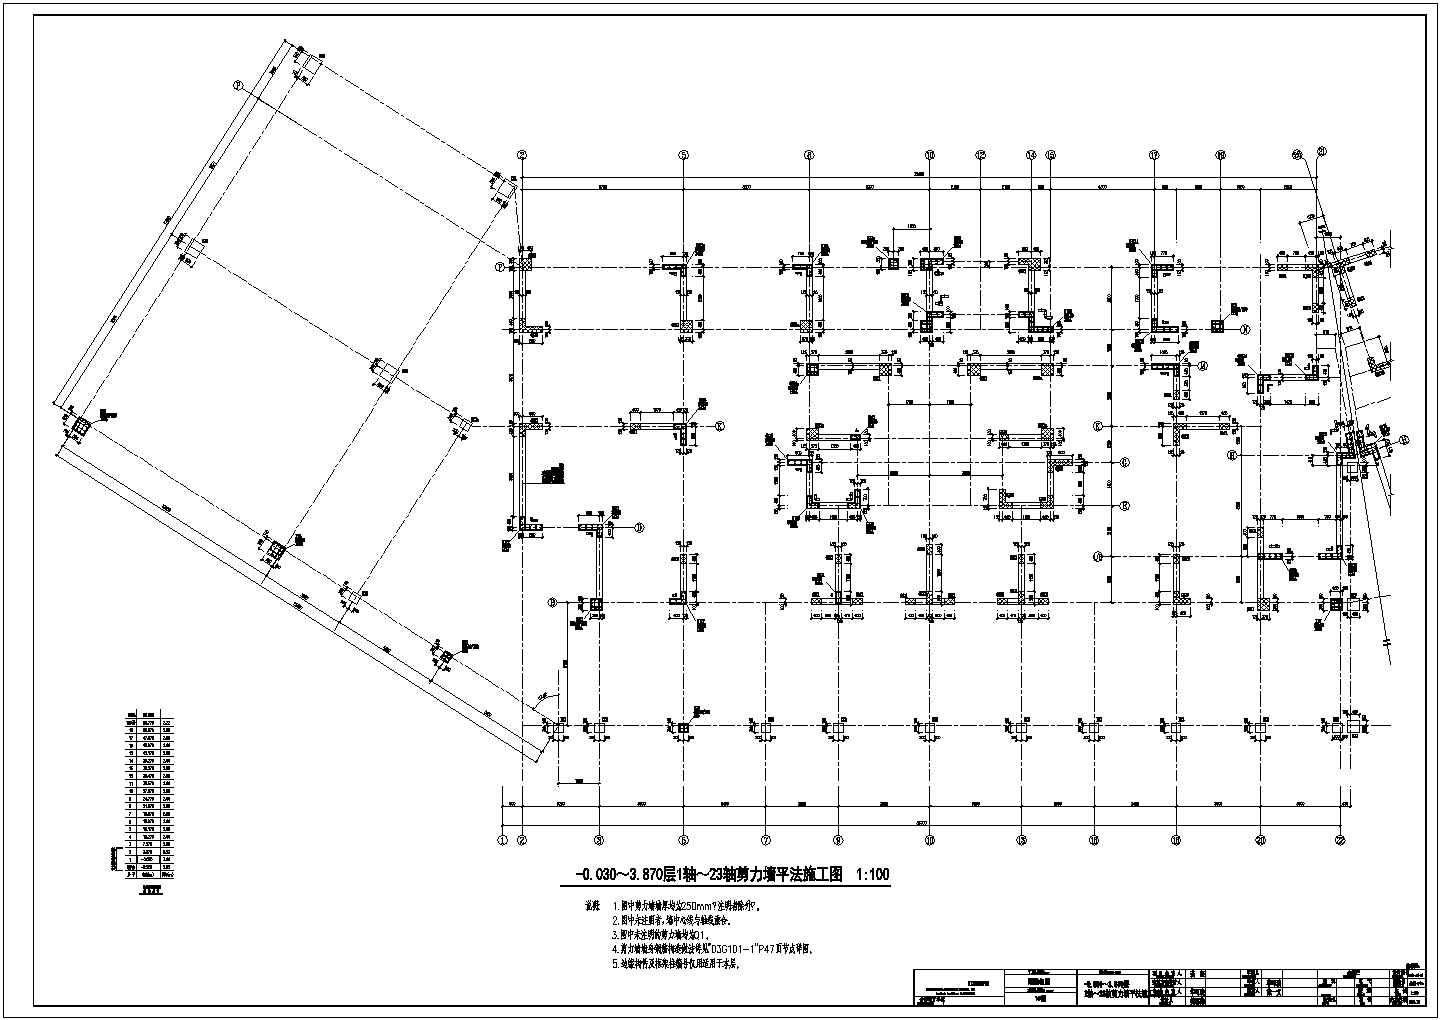 某地市政建筑工程剪力墙详细cad设计施工图(含剪力墙平法施工图)